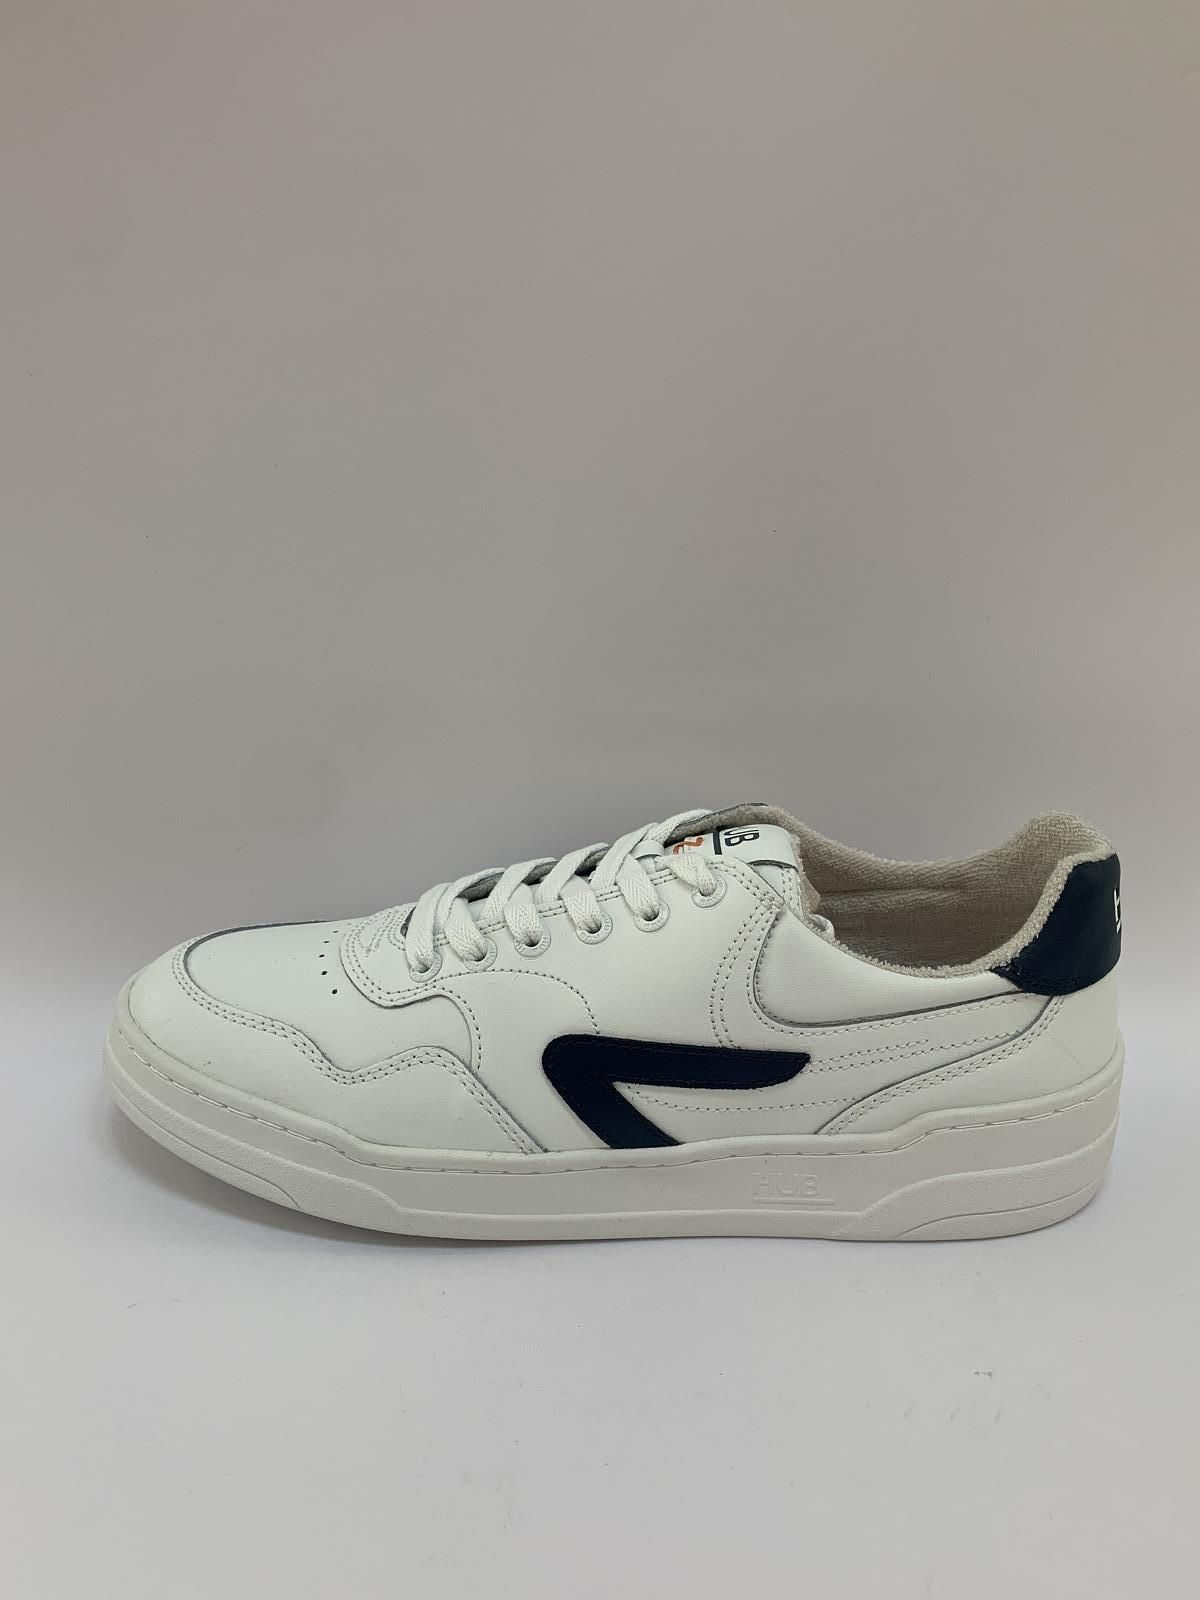 HUB Sneaker Wit+kleur heren (Sneaker Hub Wit/Jeans - Court-Z) - Schoenen Luca